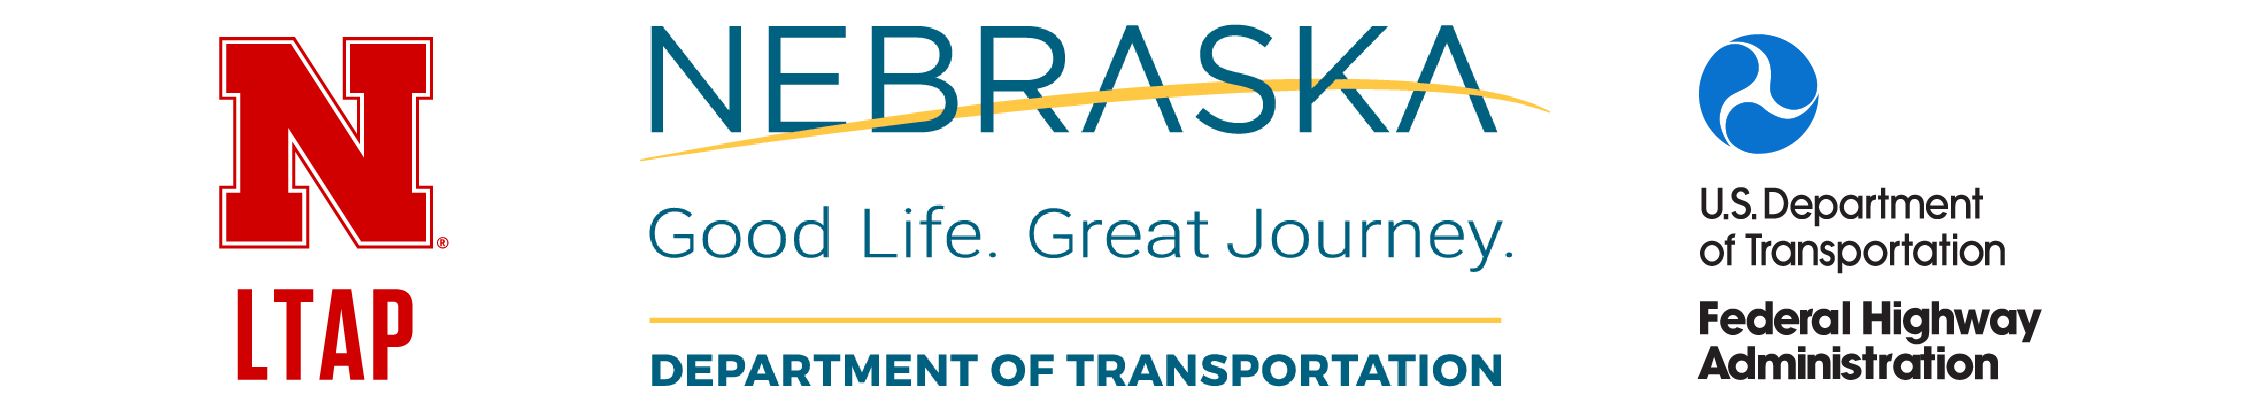 Nebraska LTAP, Nebraska Department of Transportation and Federal Highway Administration logos